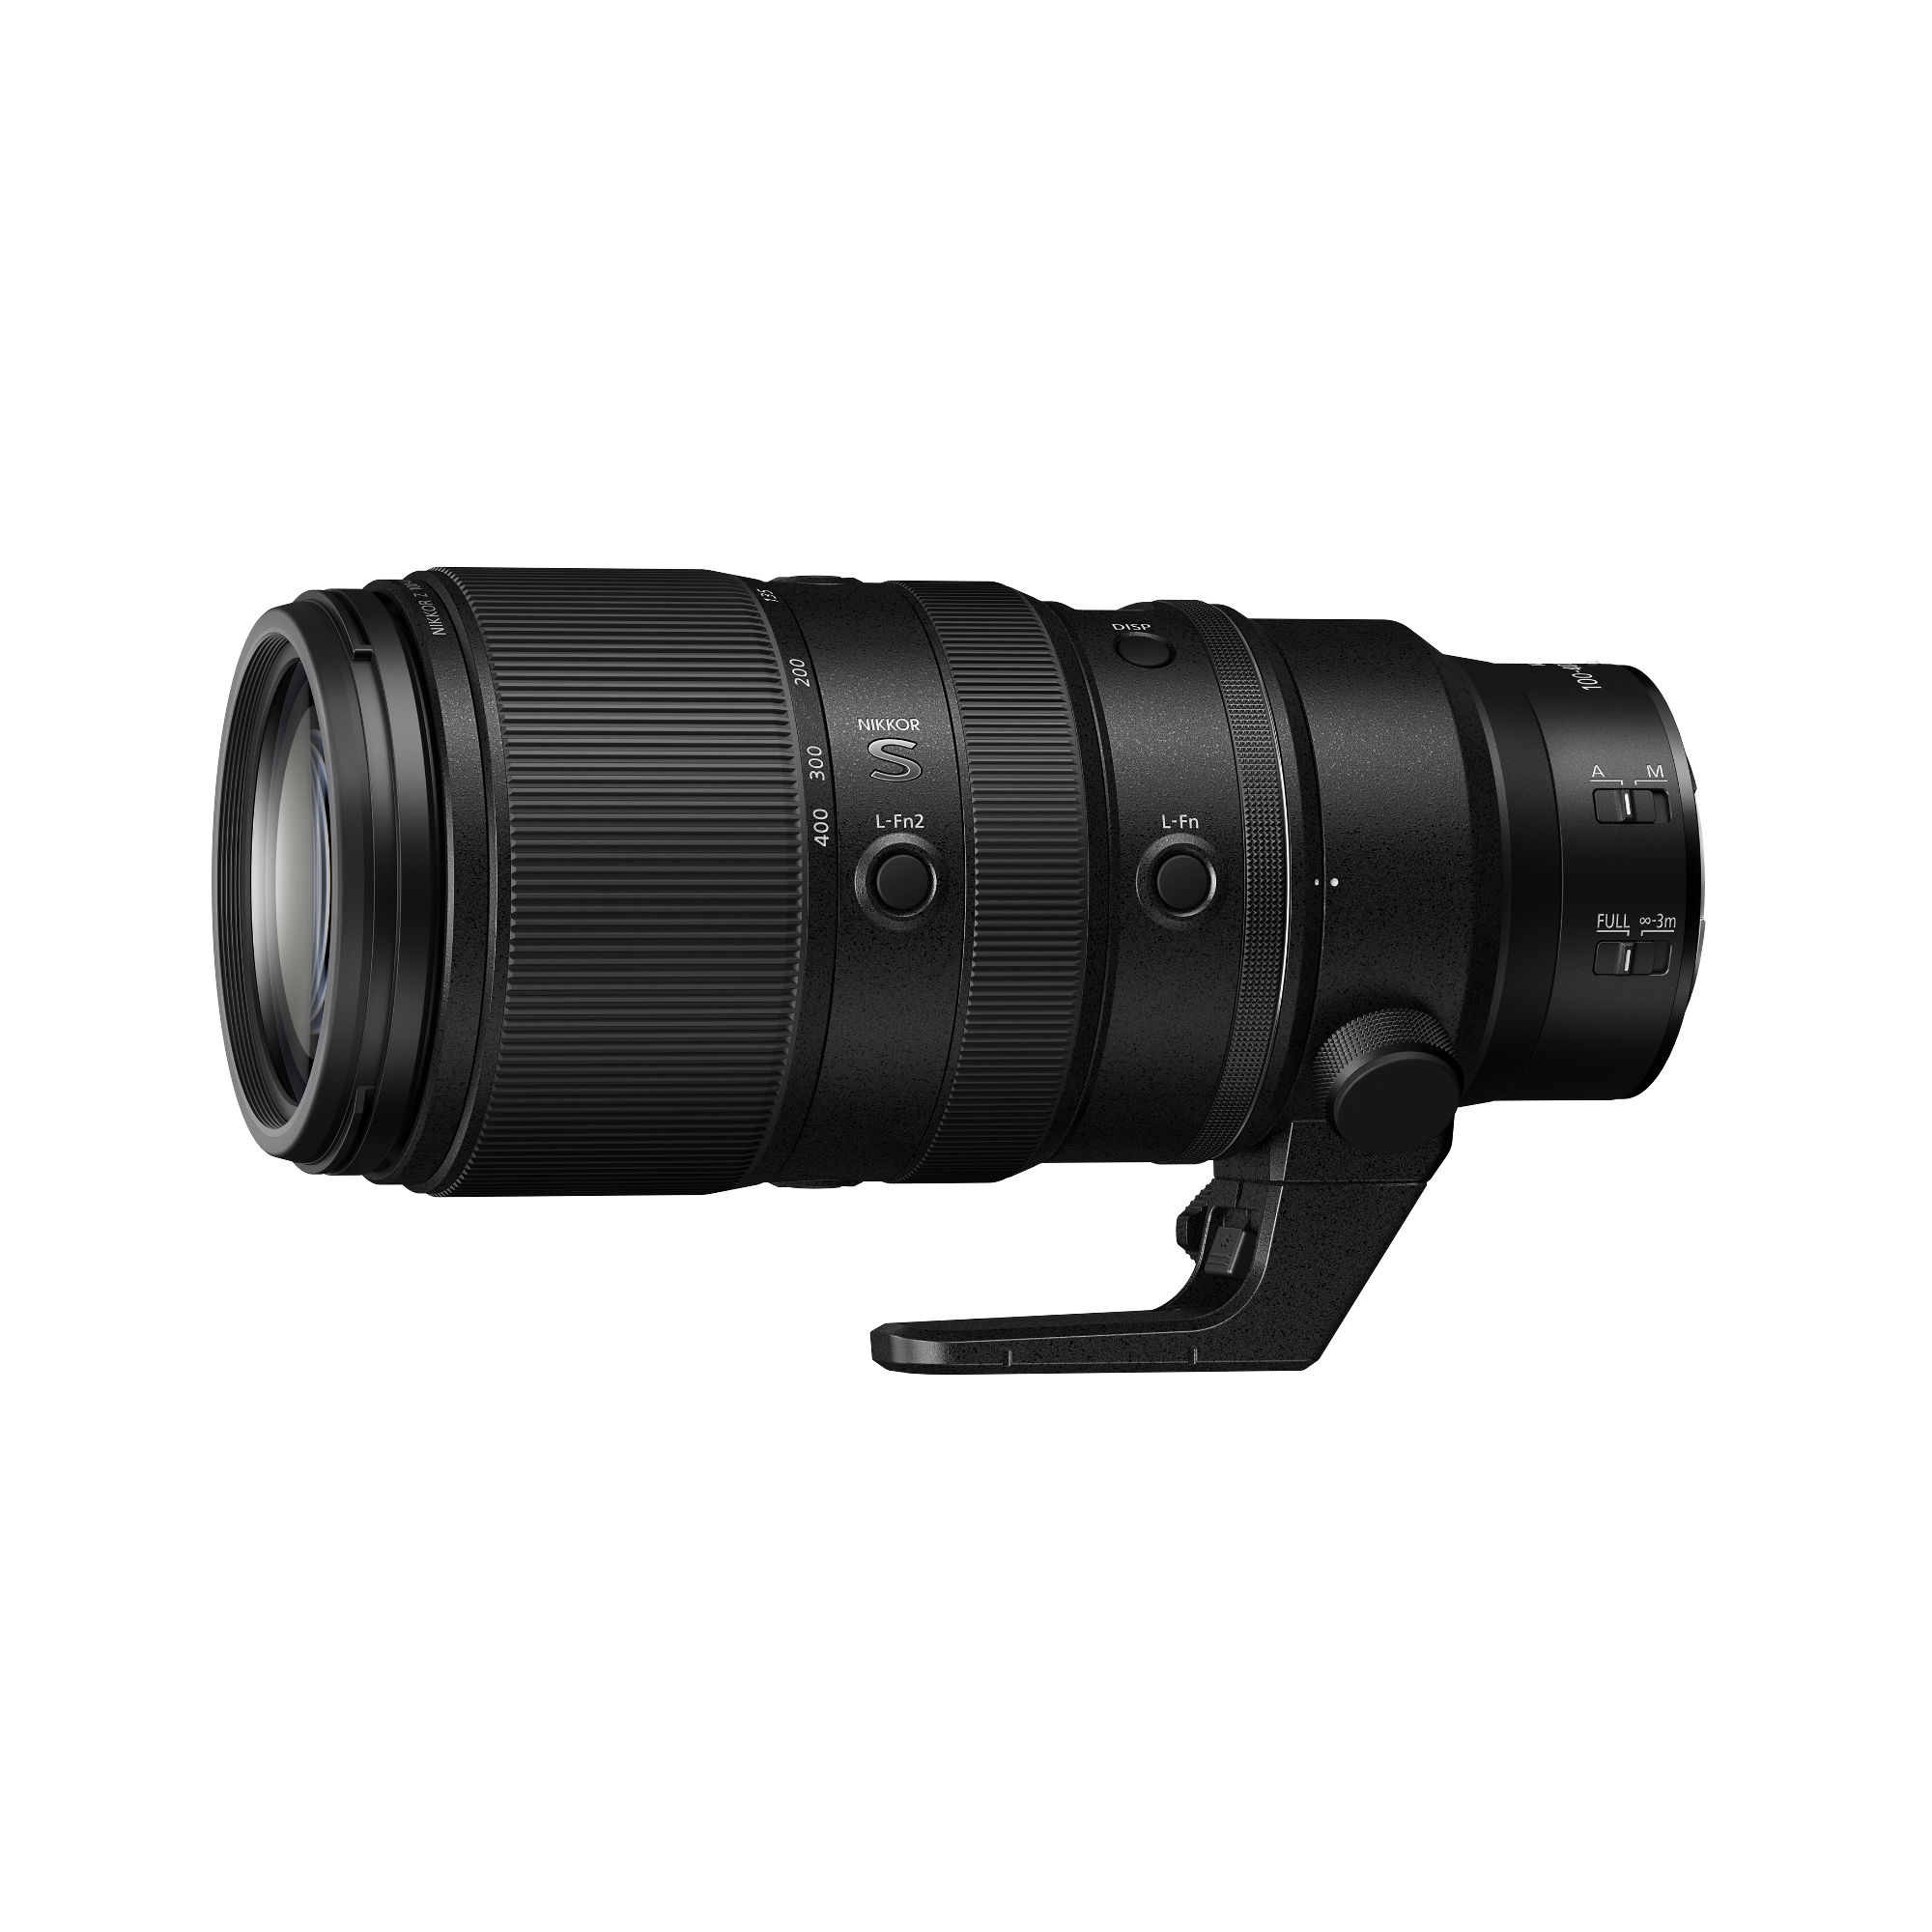 Nikkor Z 100-400mm F4.5-5.6 VR S Lens